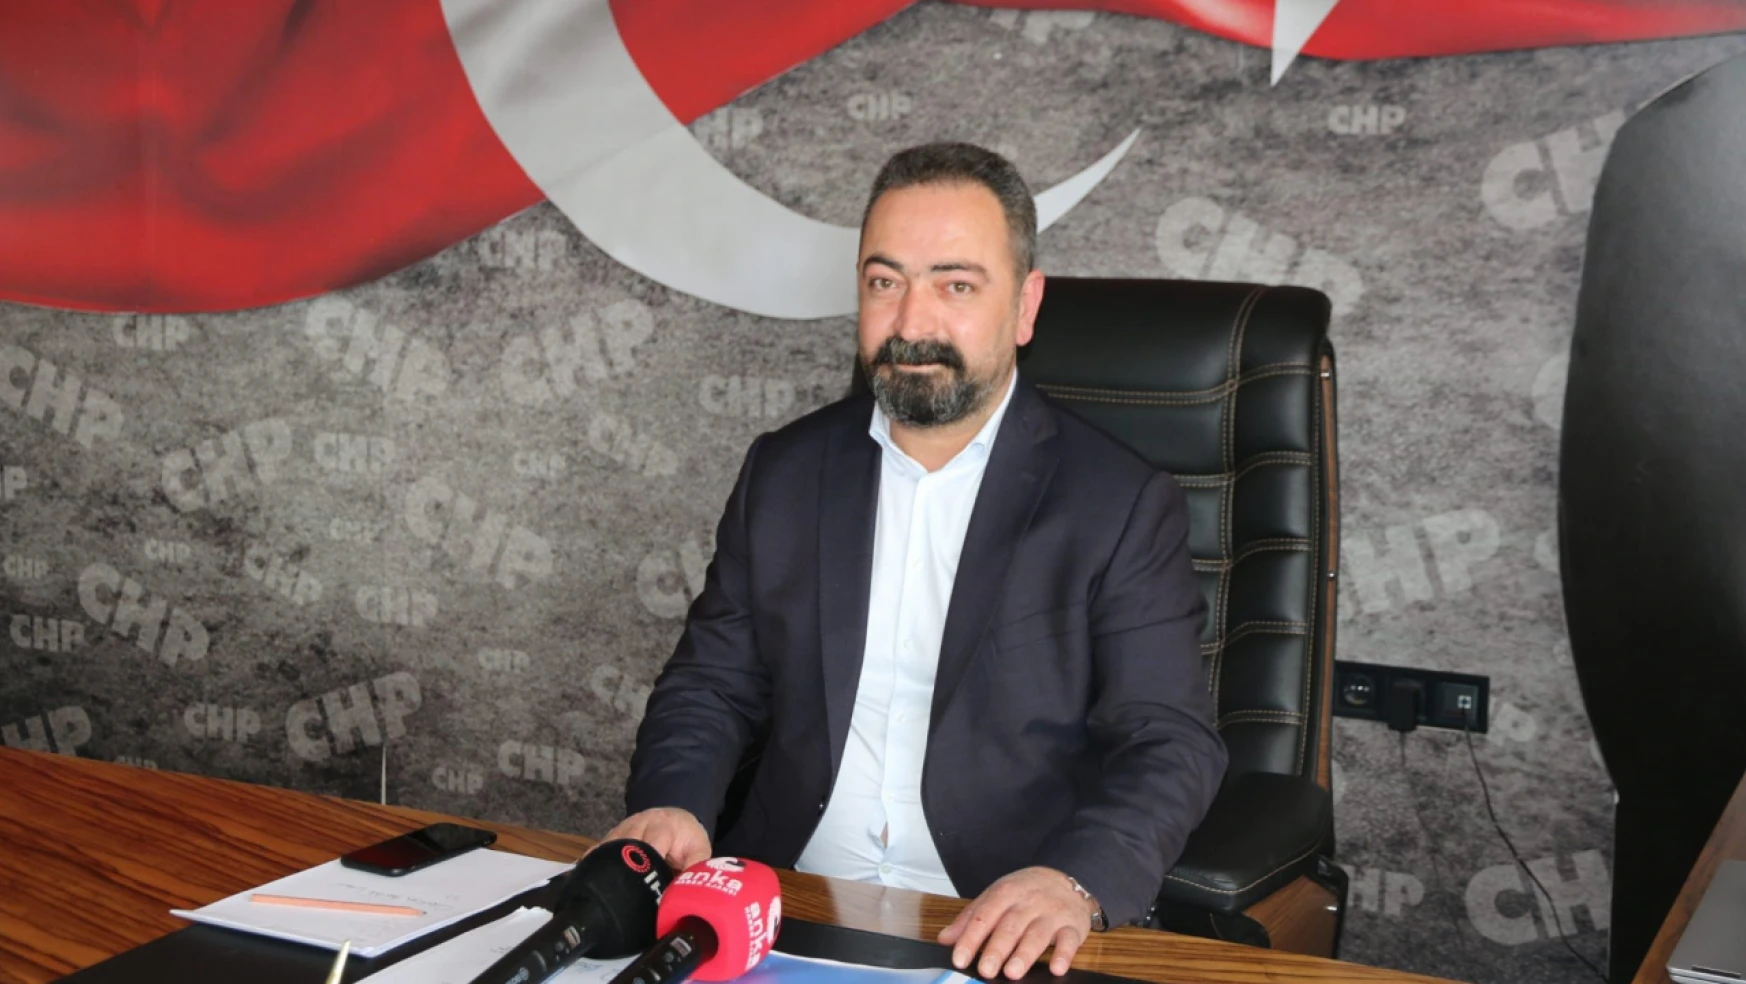 CHP Milletvekili Gürsel Erol'un Oyunu Nerede Kullanacağı Belli Oldu